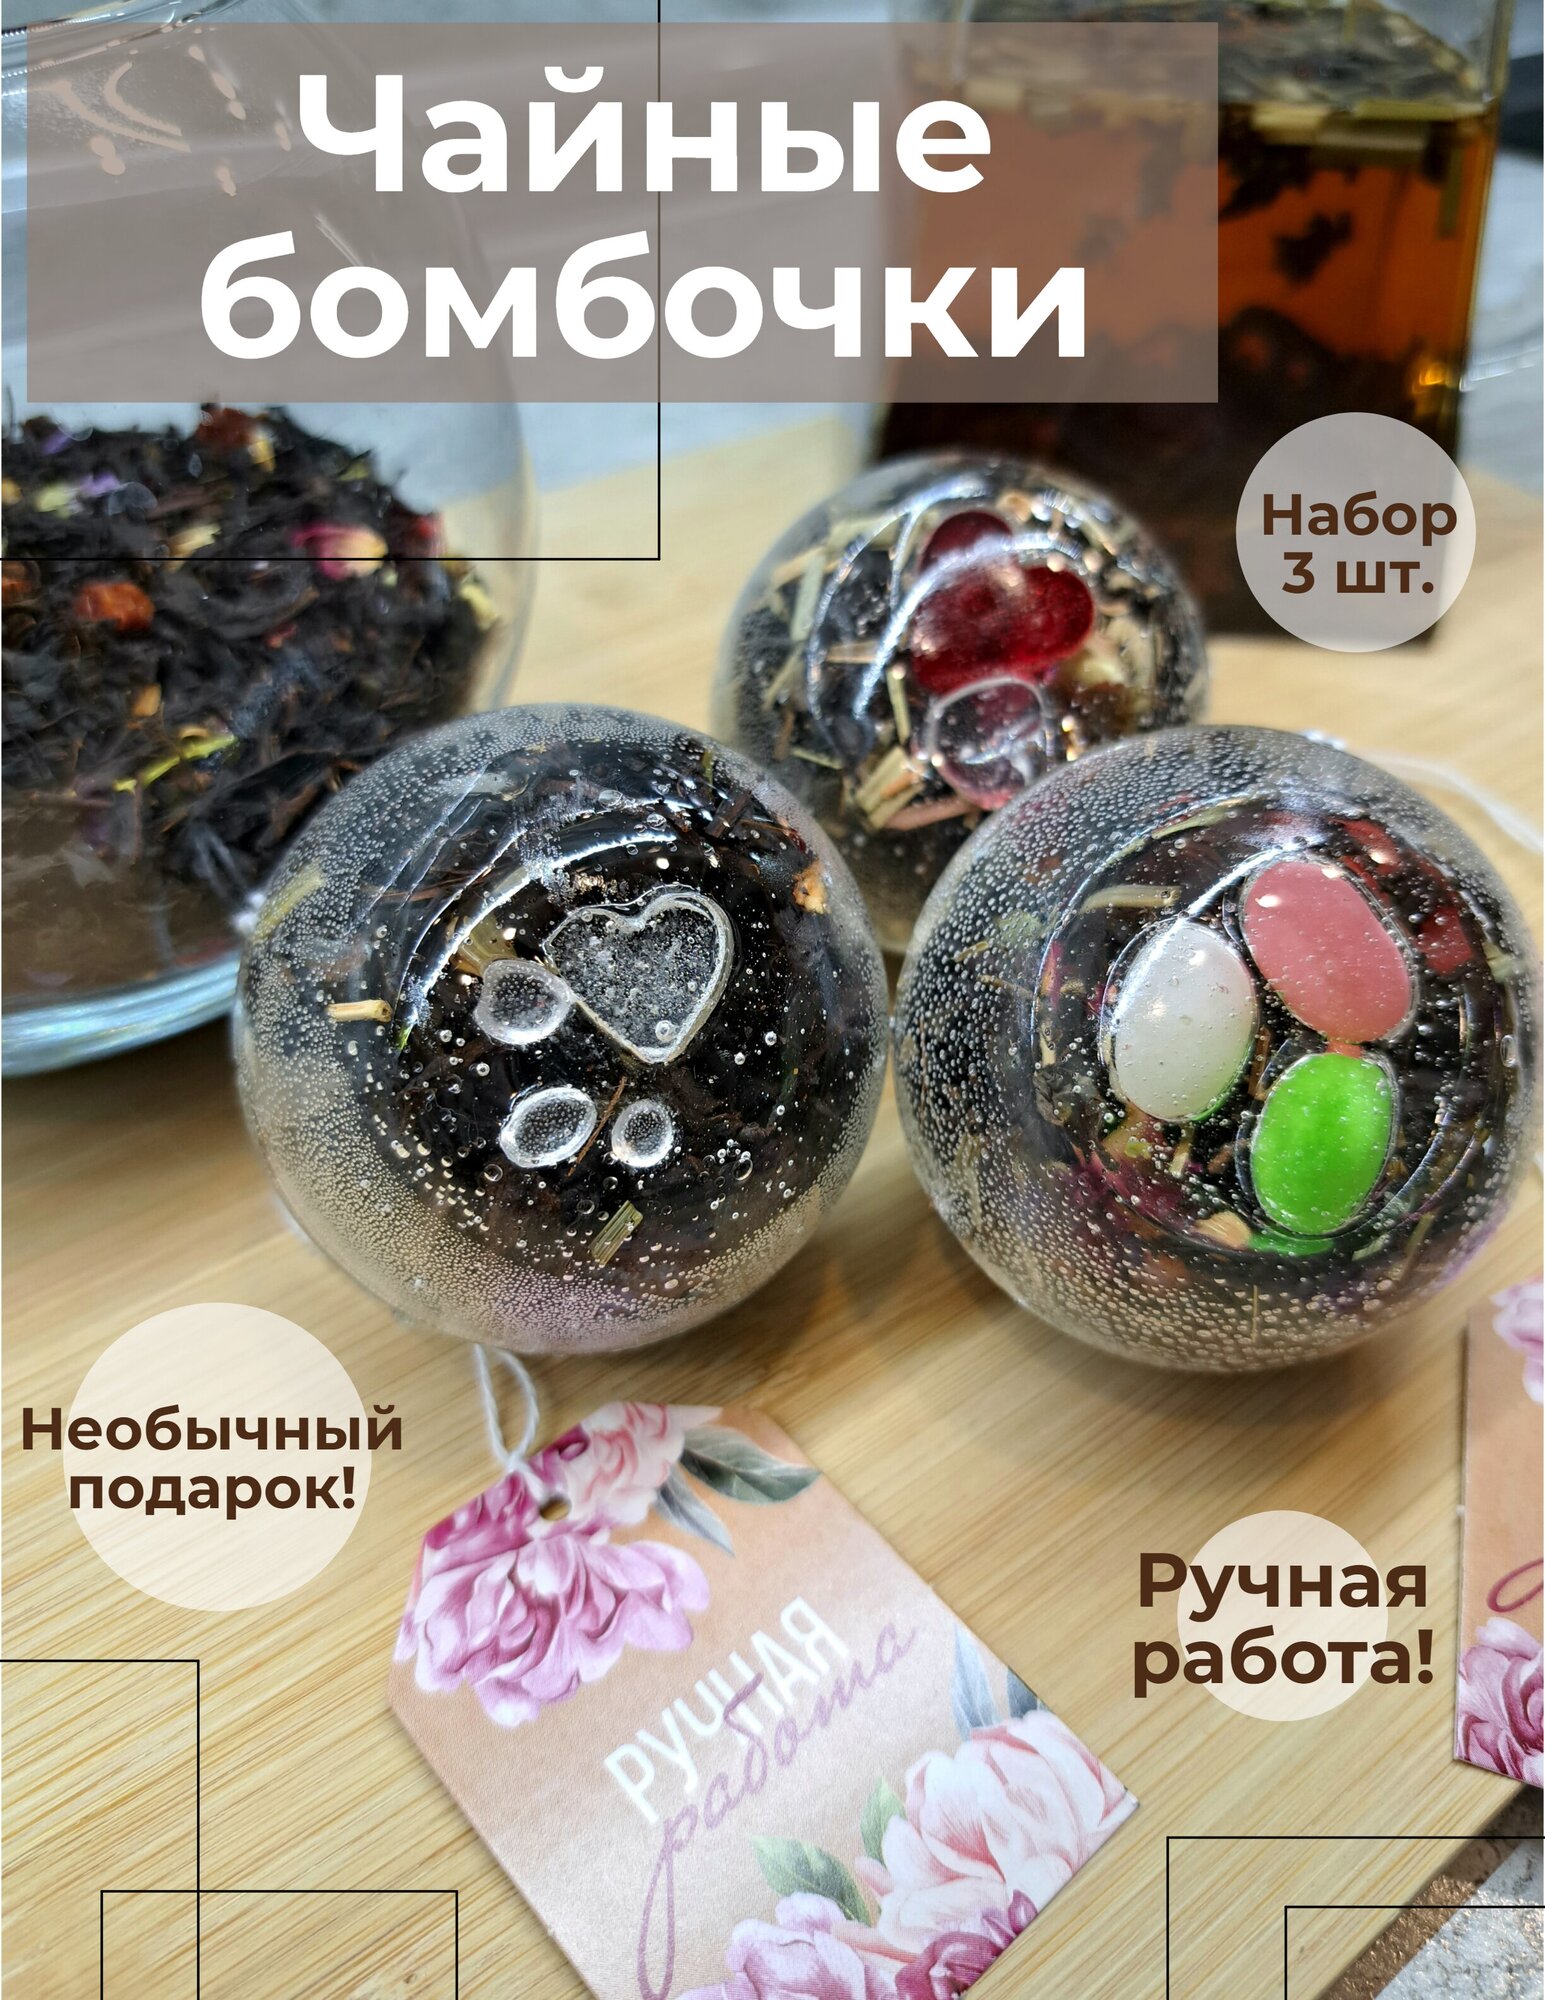 Чайные шарики, чайные бомбочки, подарочный набор 3 шт. диаметром 7 см. (Тутти Фрутти, Семь Красавиц, Жасмин)